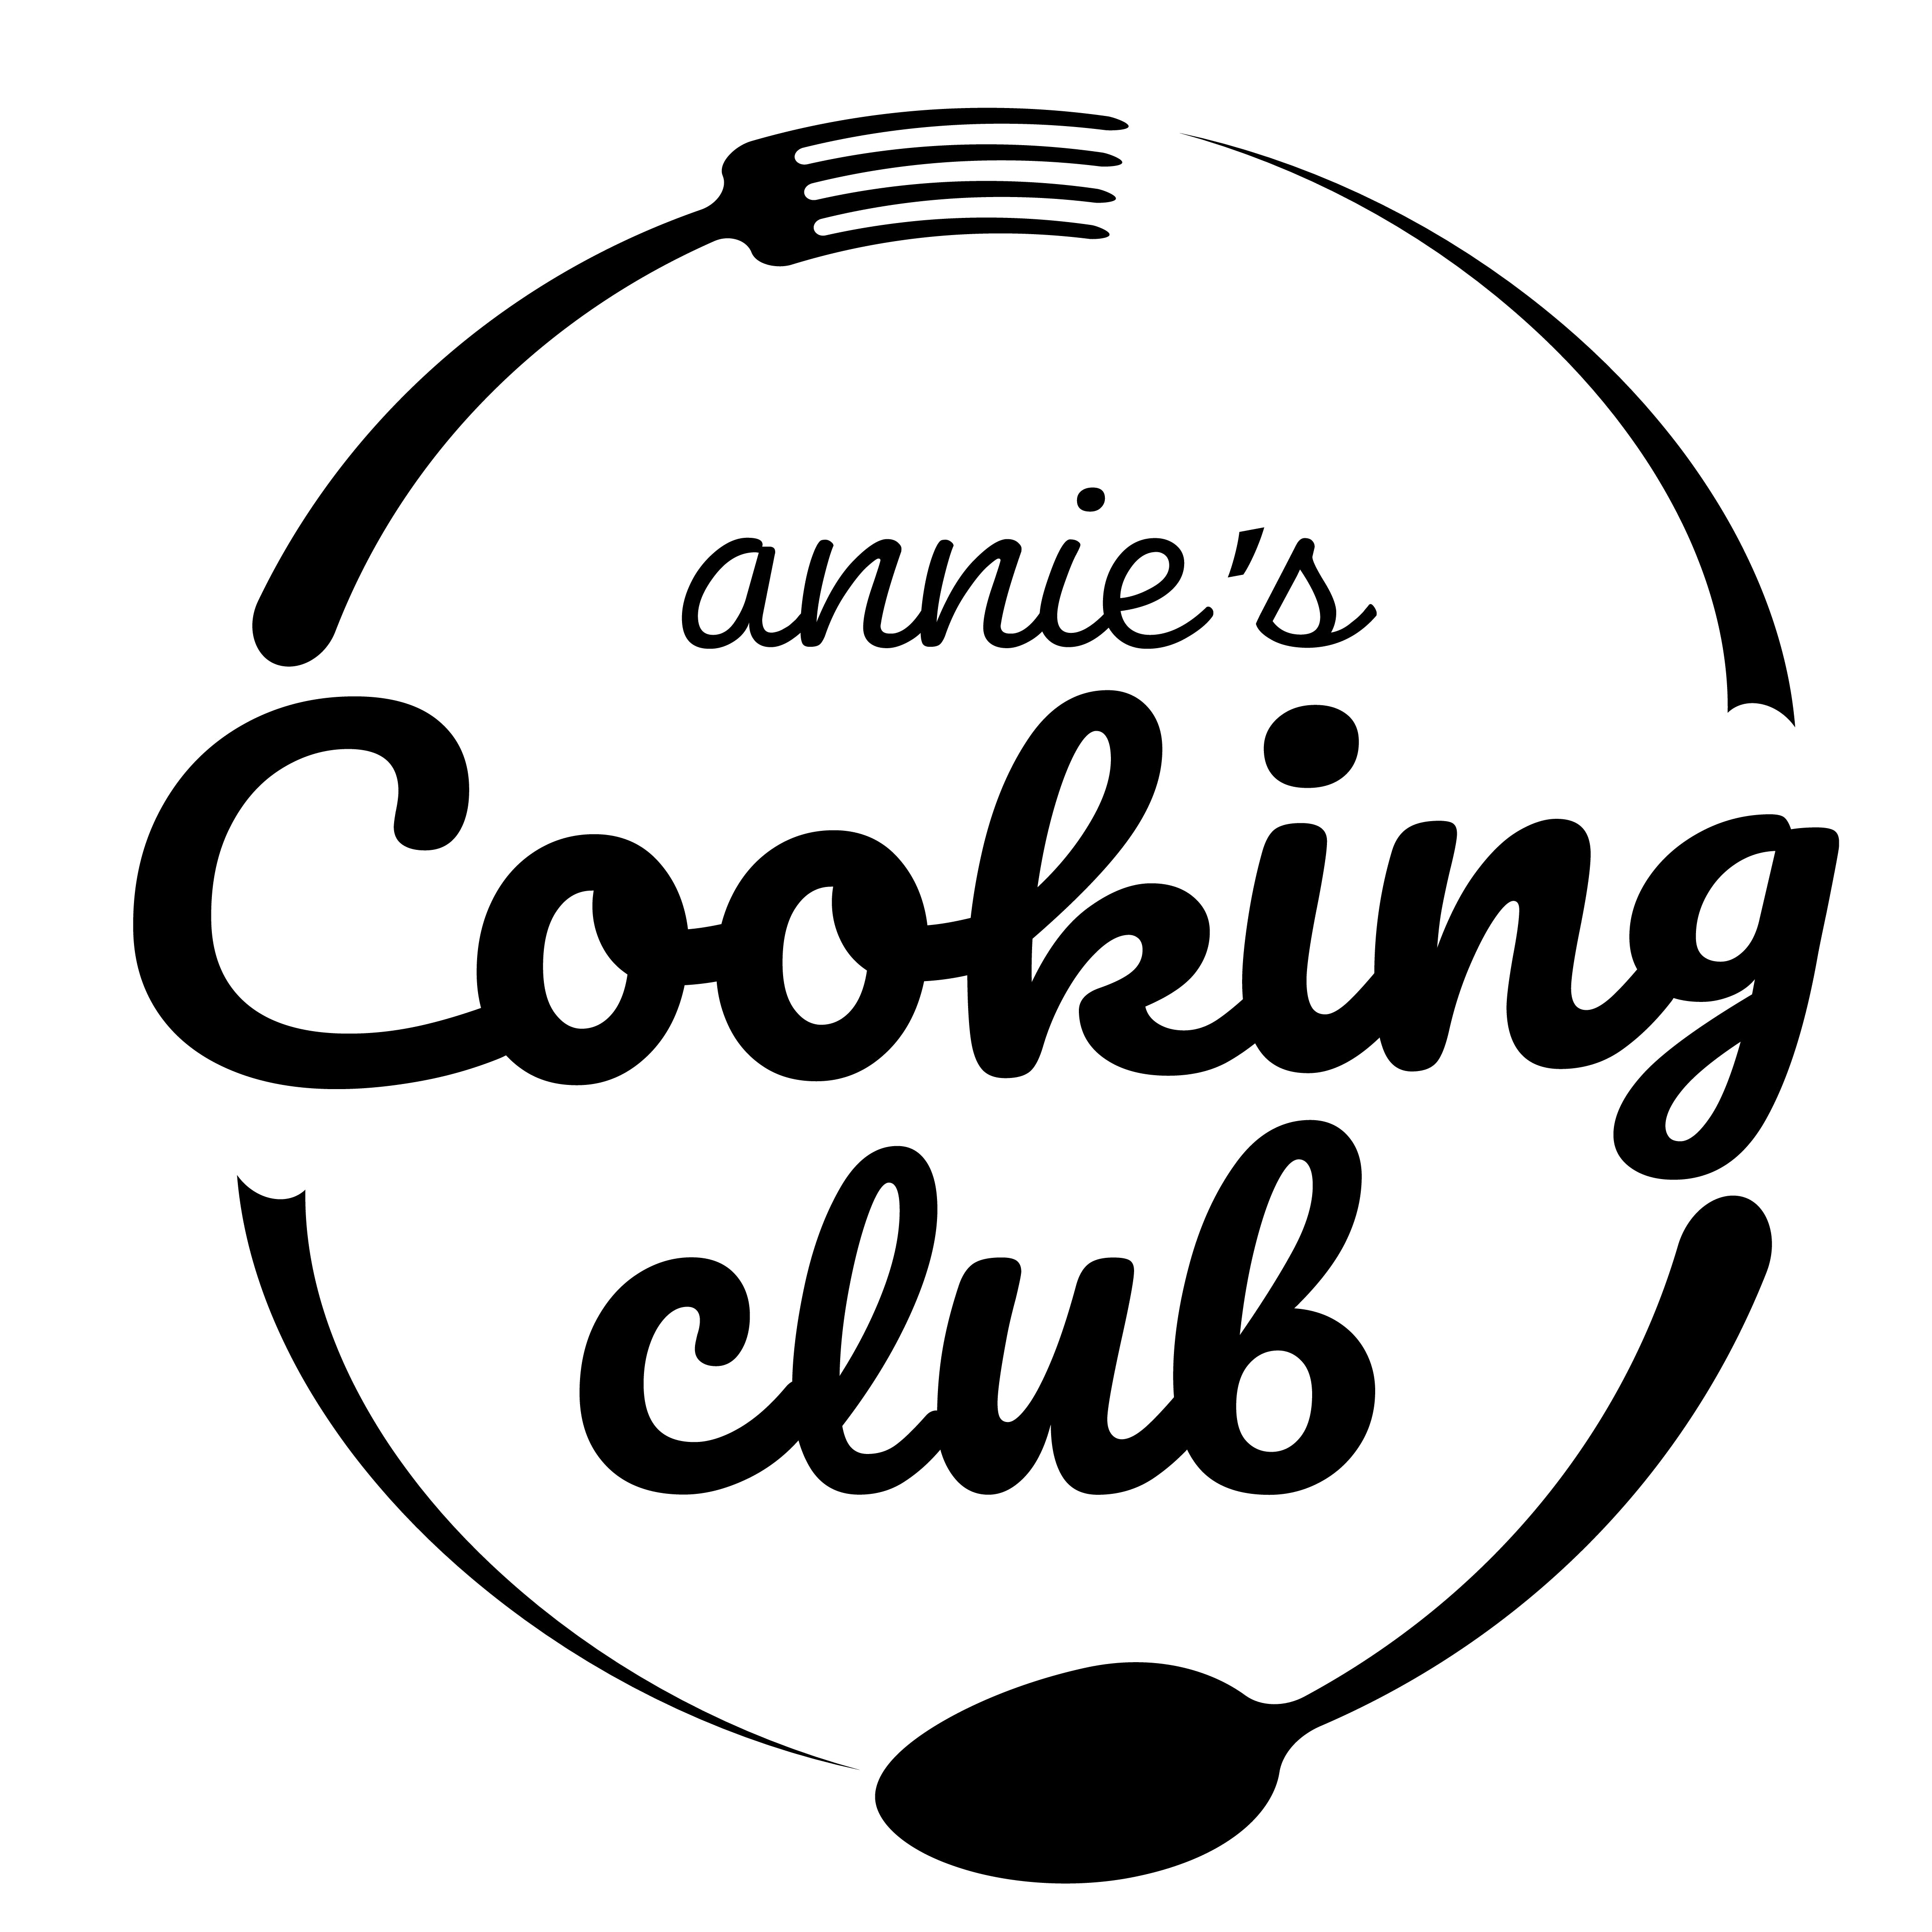 Annie's Cooking Club